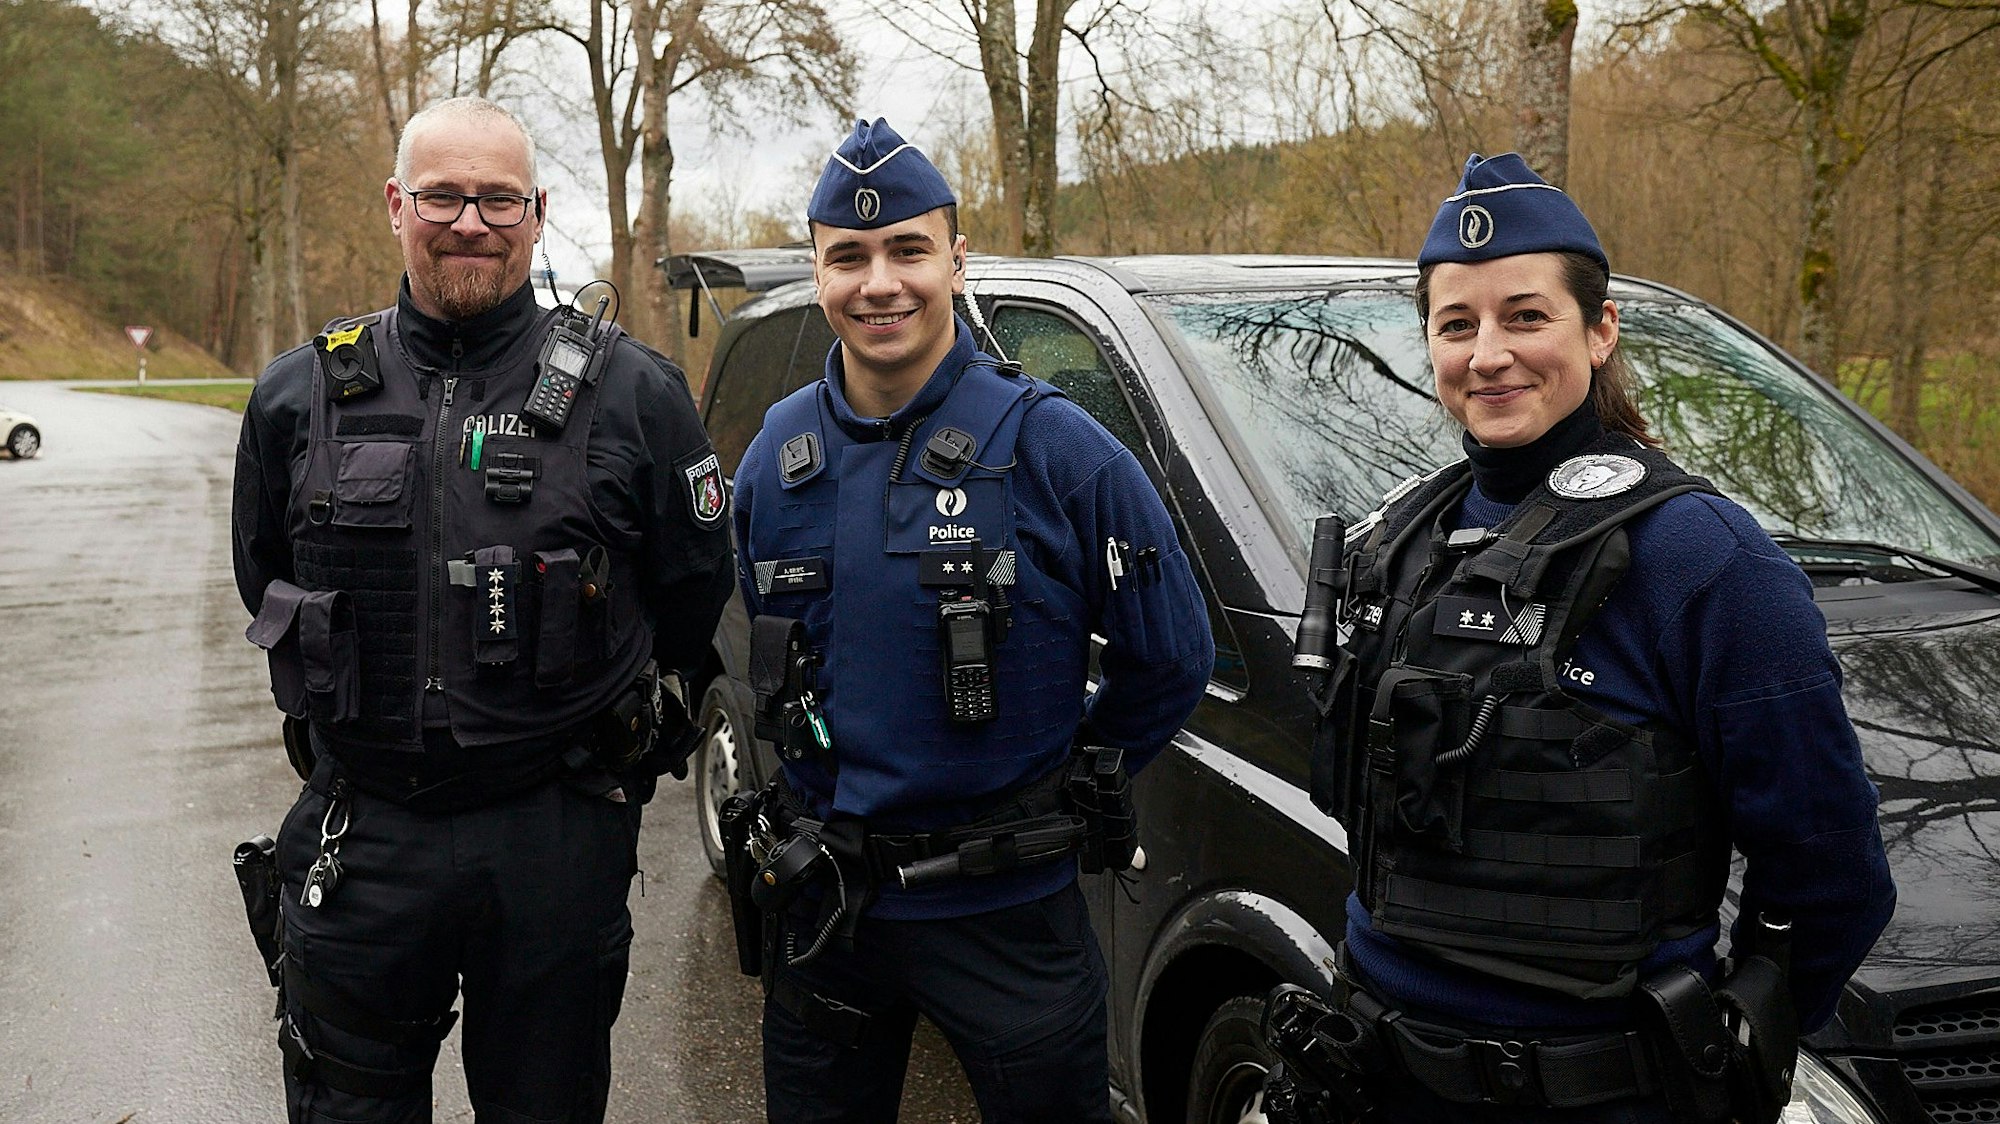 Zwei belgische Polizisten und ein deutscher Polizist stehen zusammen an einem Auto.